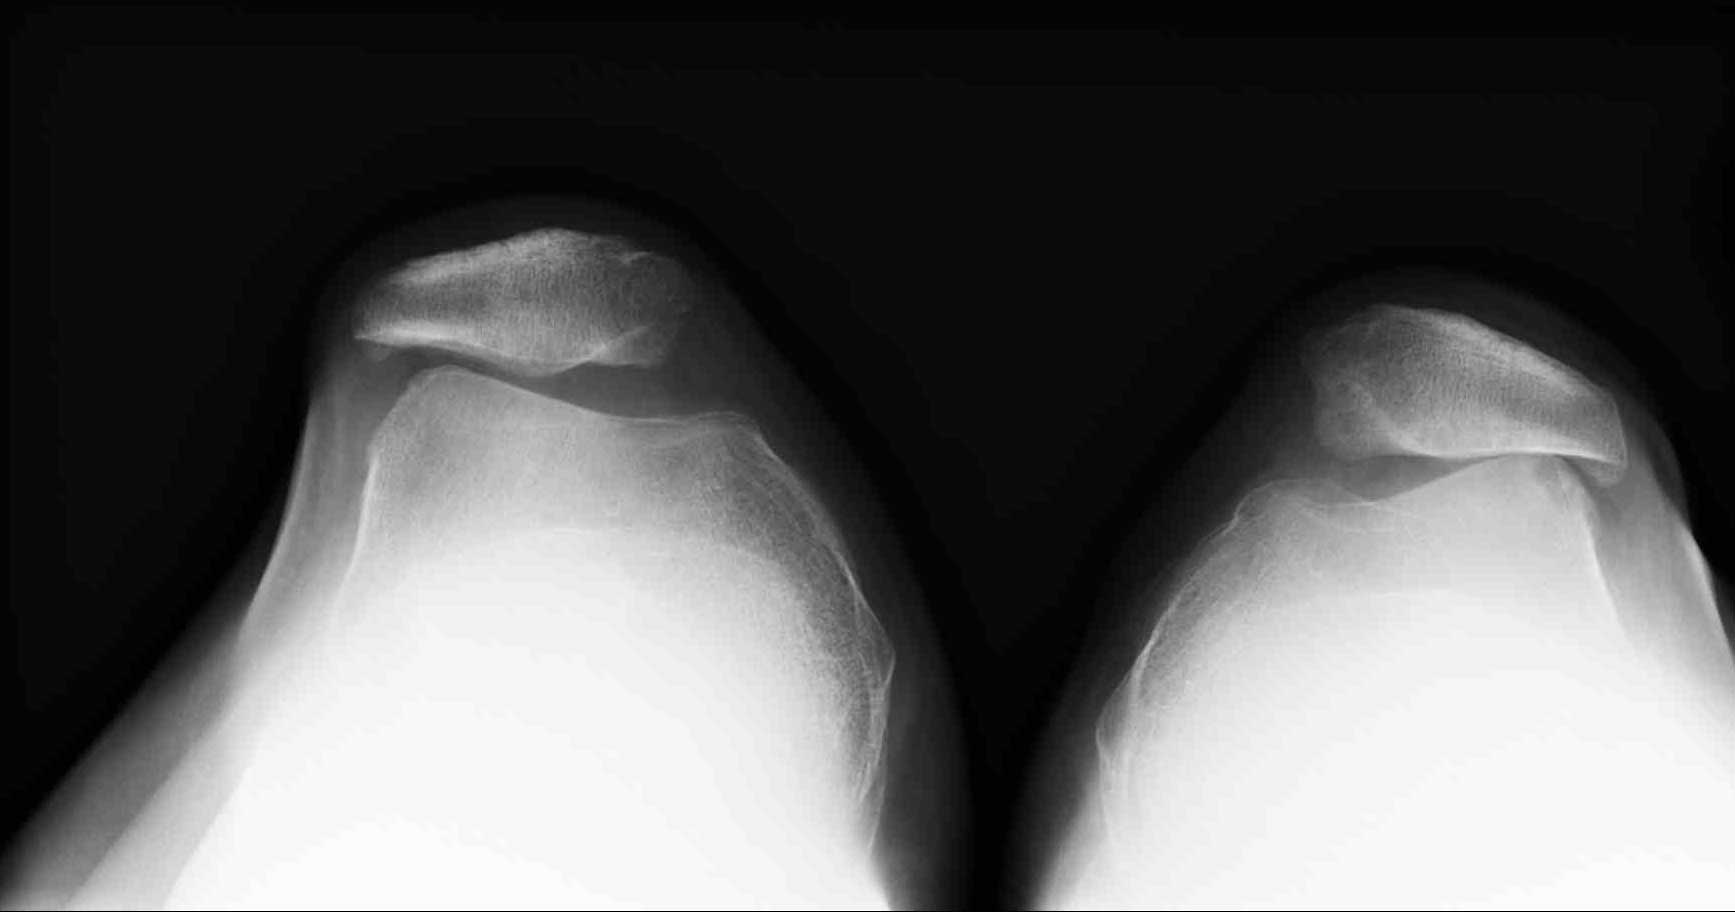 Пателлофеморальный артроз, рентген: На данном снимке пациент лежит на спине, ноги согнуты в коленях. Снимок показывает состояние суставной щели при двух феморопателлярных суставах. Слева видно удовлетворительное состояние суставной щели. Коленная чашечка (надколенник) и надколенниковая поверхность бедренной кости находятся на расстоянии боле 3 мм. друг от друга. Справа виден пателлофеморальный артроз: Надколенник и бедренная кость касаются друг друга, хрящевой слой полностью изношен.© Gelenk-Klinik.de